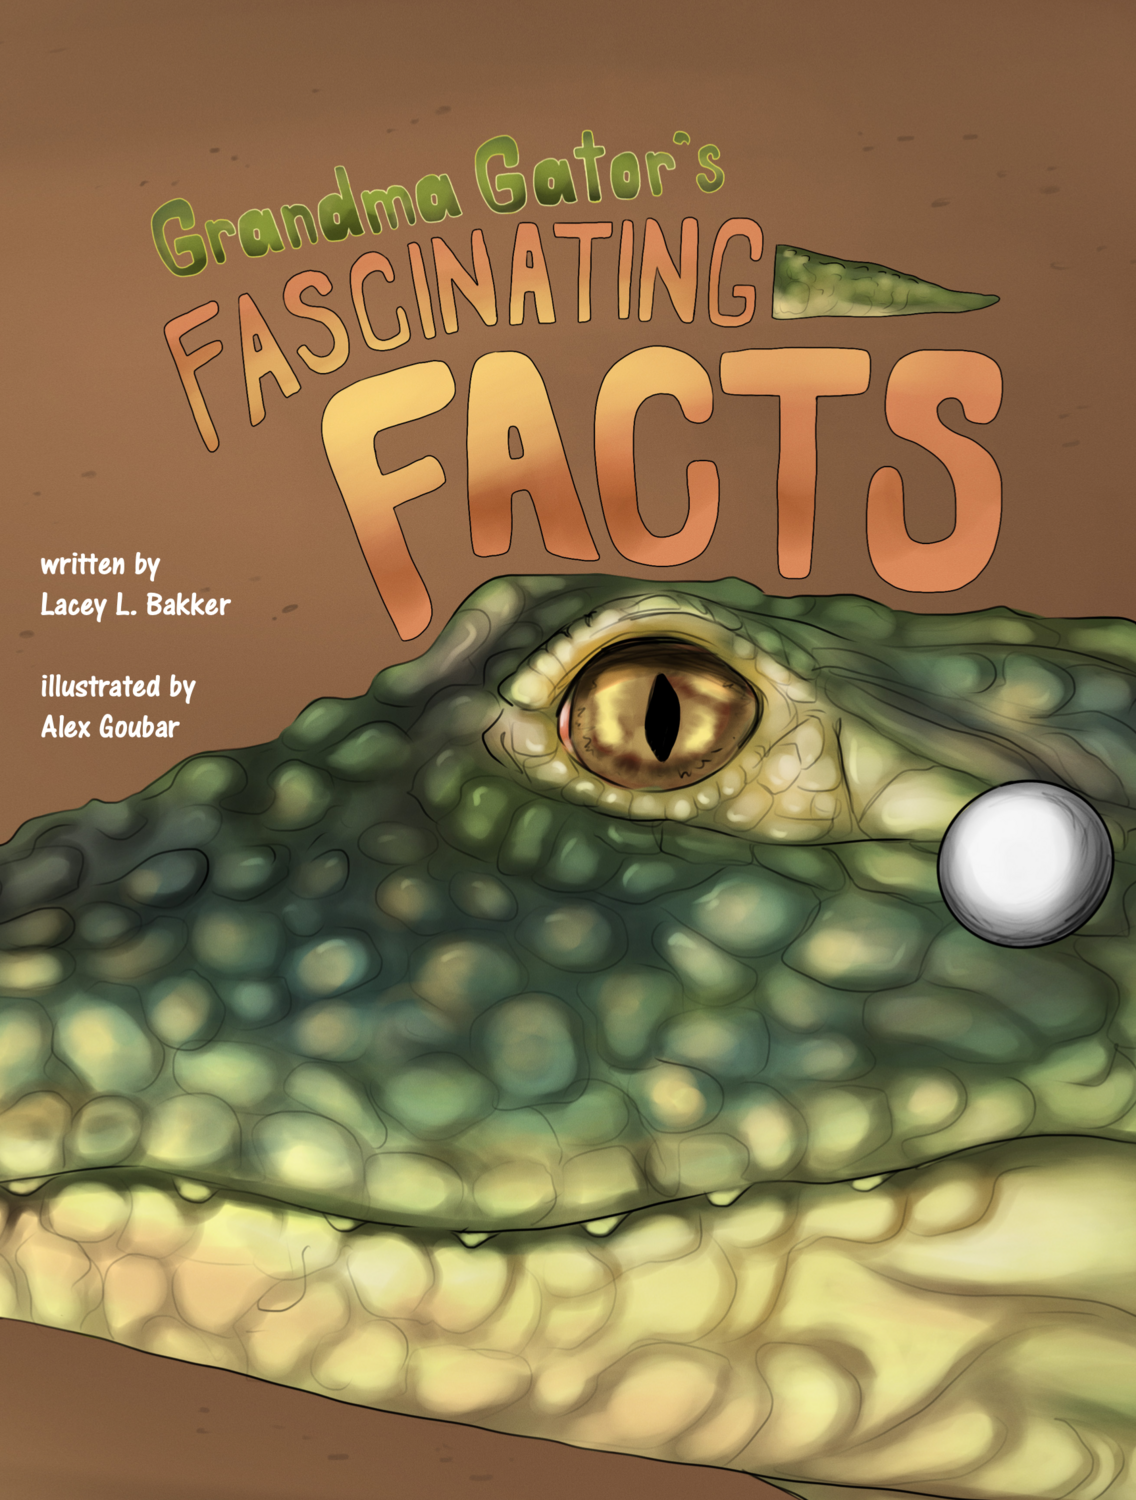 Grandma Gator's Fascinating Facts! Book